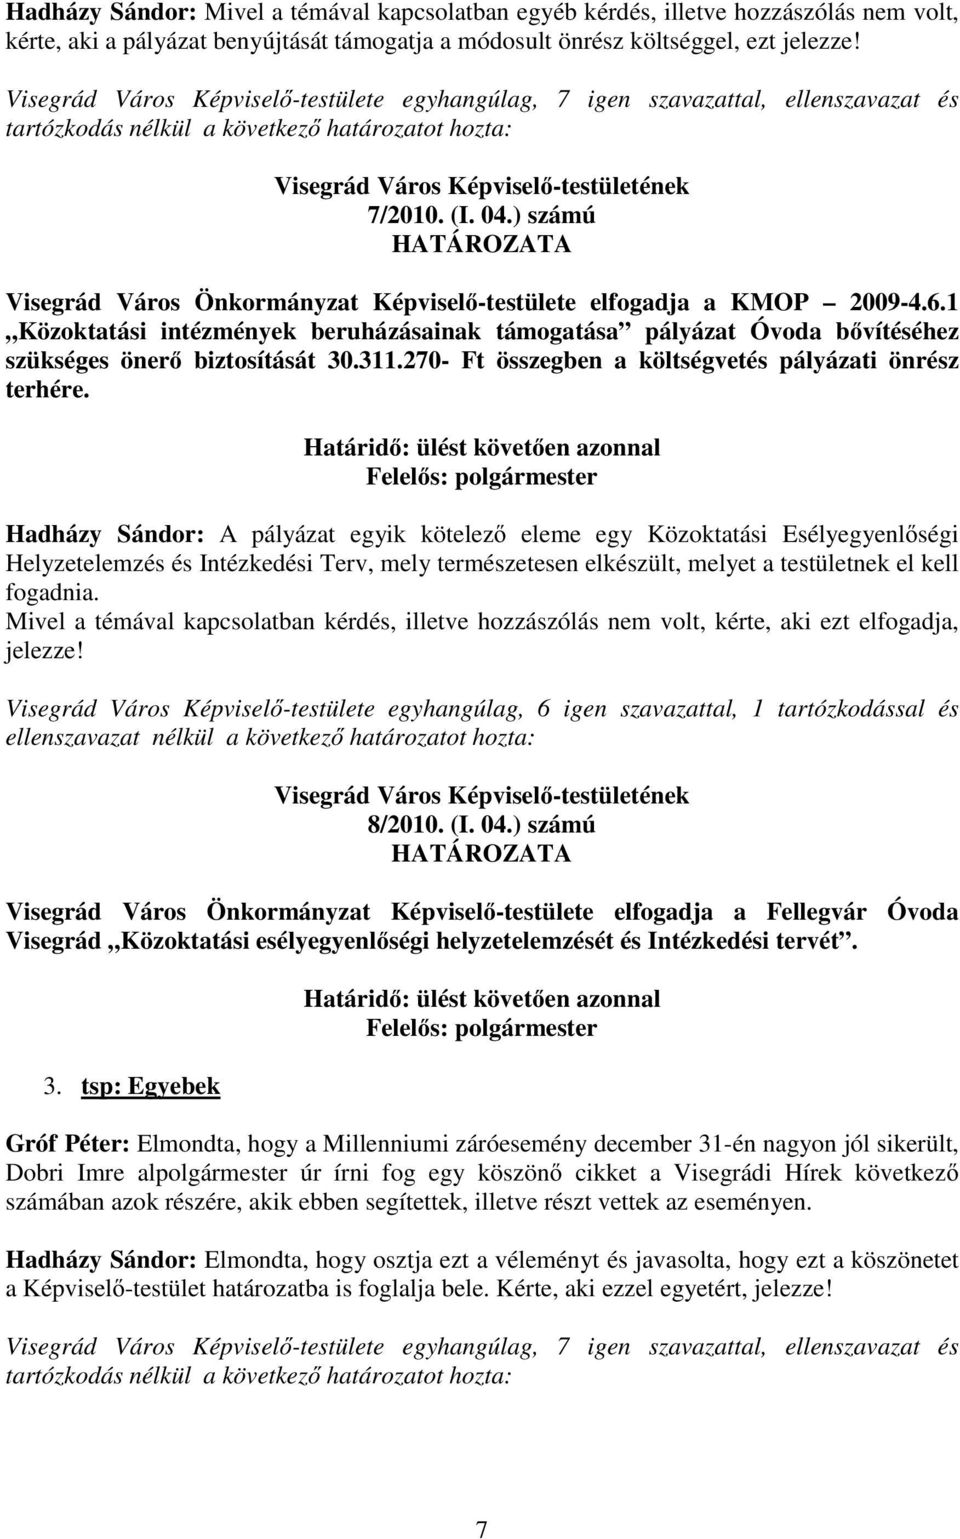 ) számú Visegrád Város Önkormányzat Képvisel -testülete elfogadja a KMOP 2009-4.6.1 Közoktatási intézmények beruházásainak támogatása pályázat Óvoda b vítéséhez szükséges öner biztosítását 30.311.